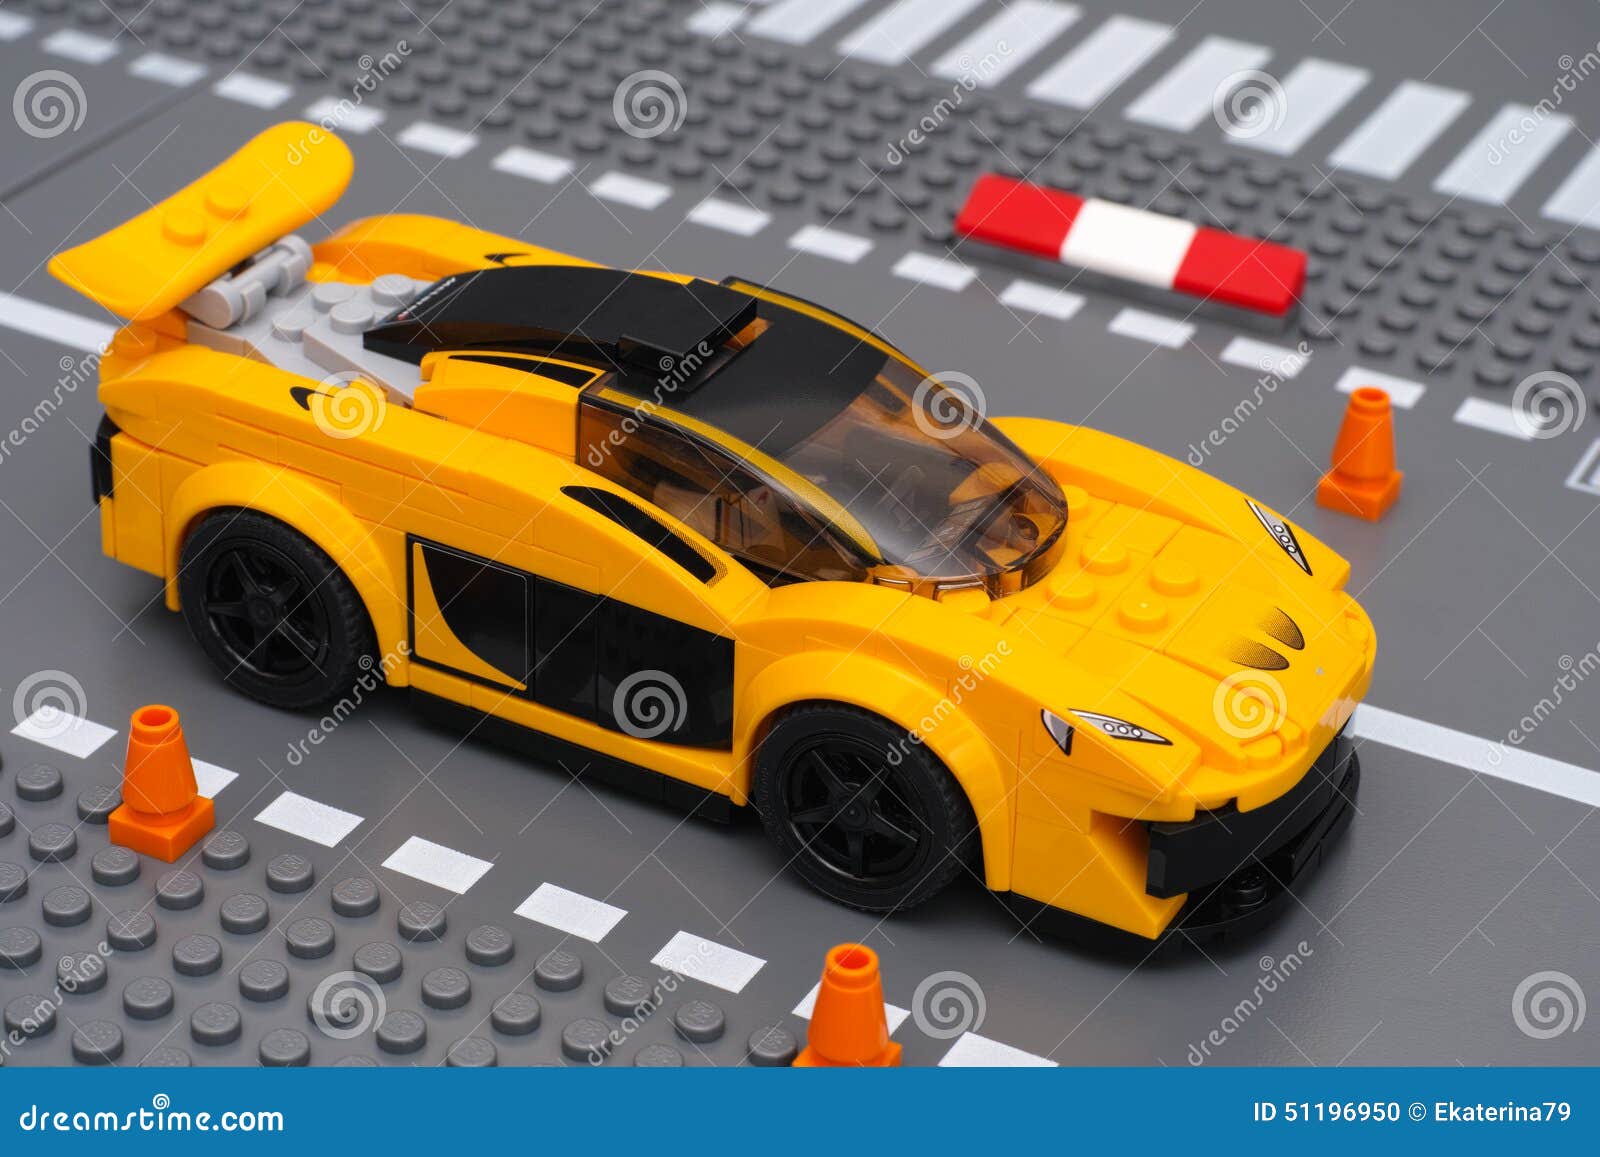 voiture lego jaune